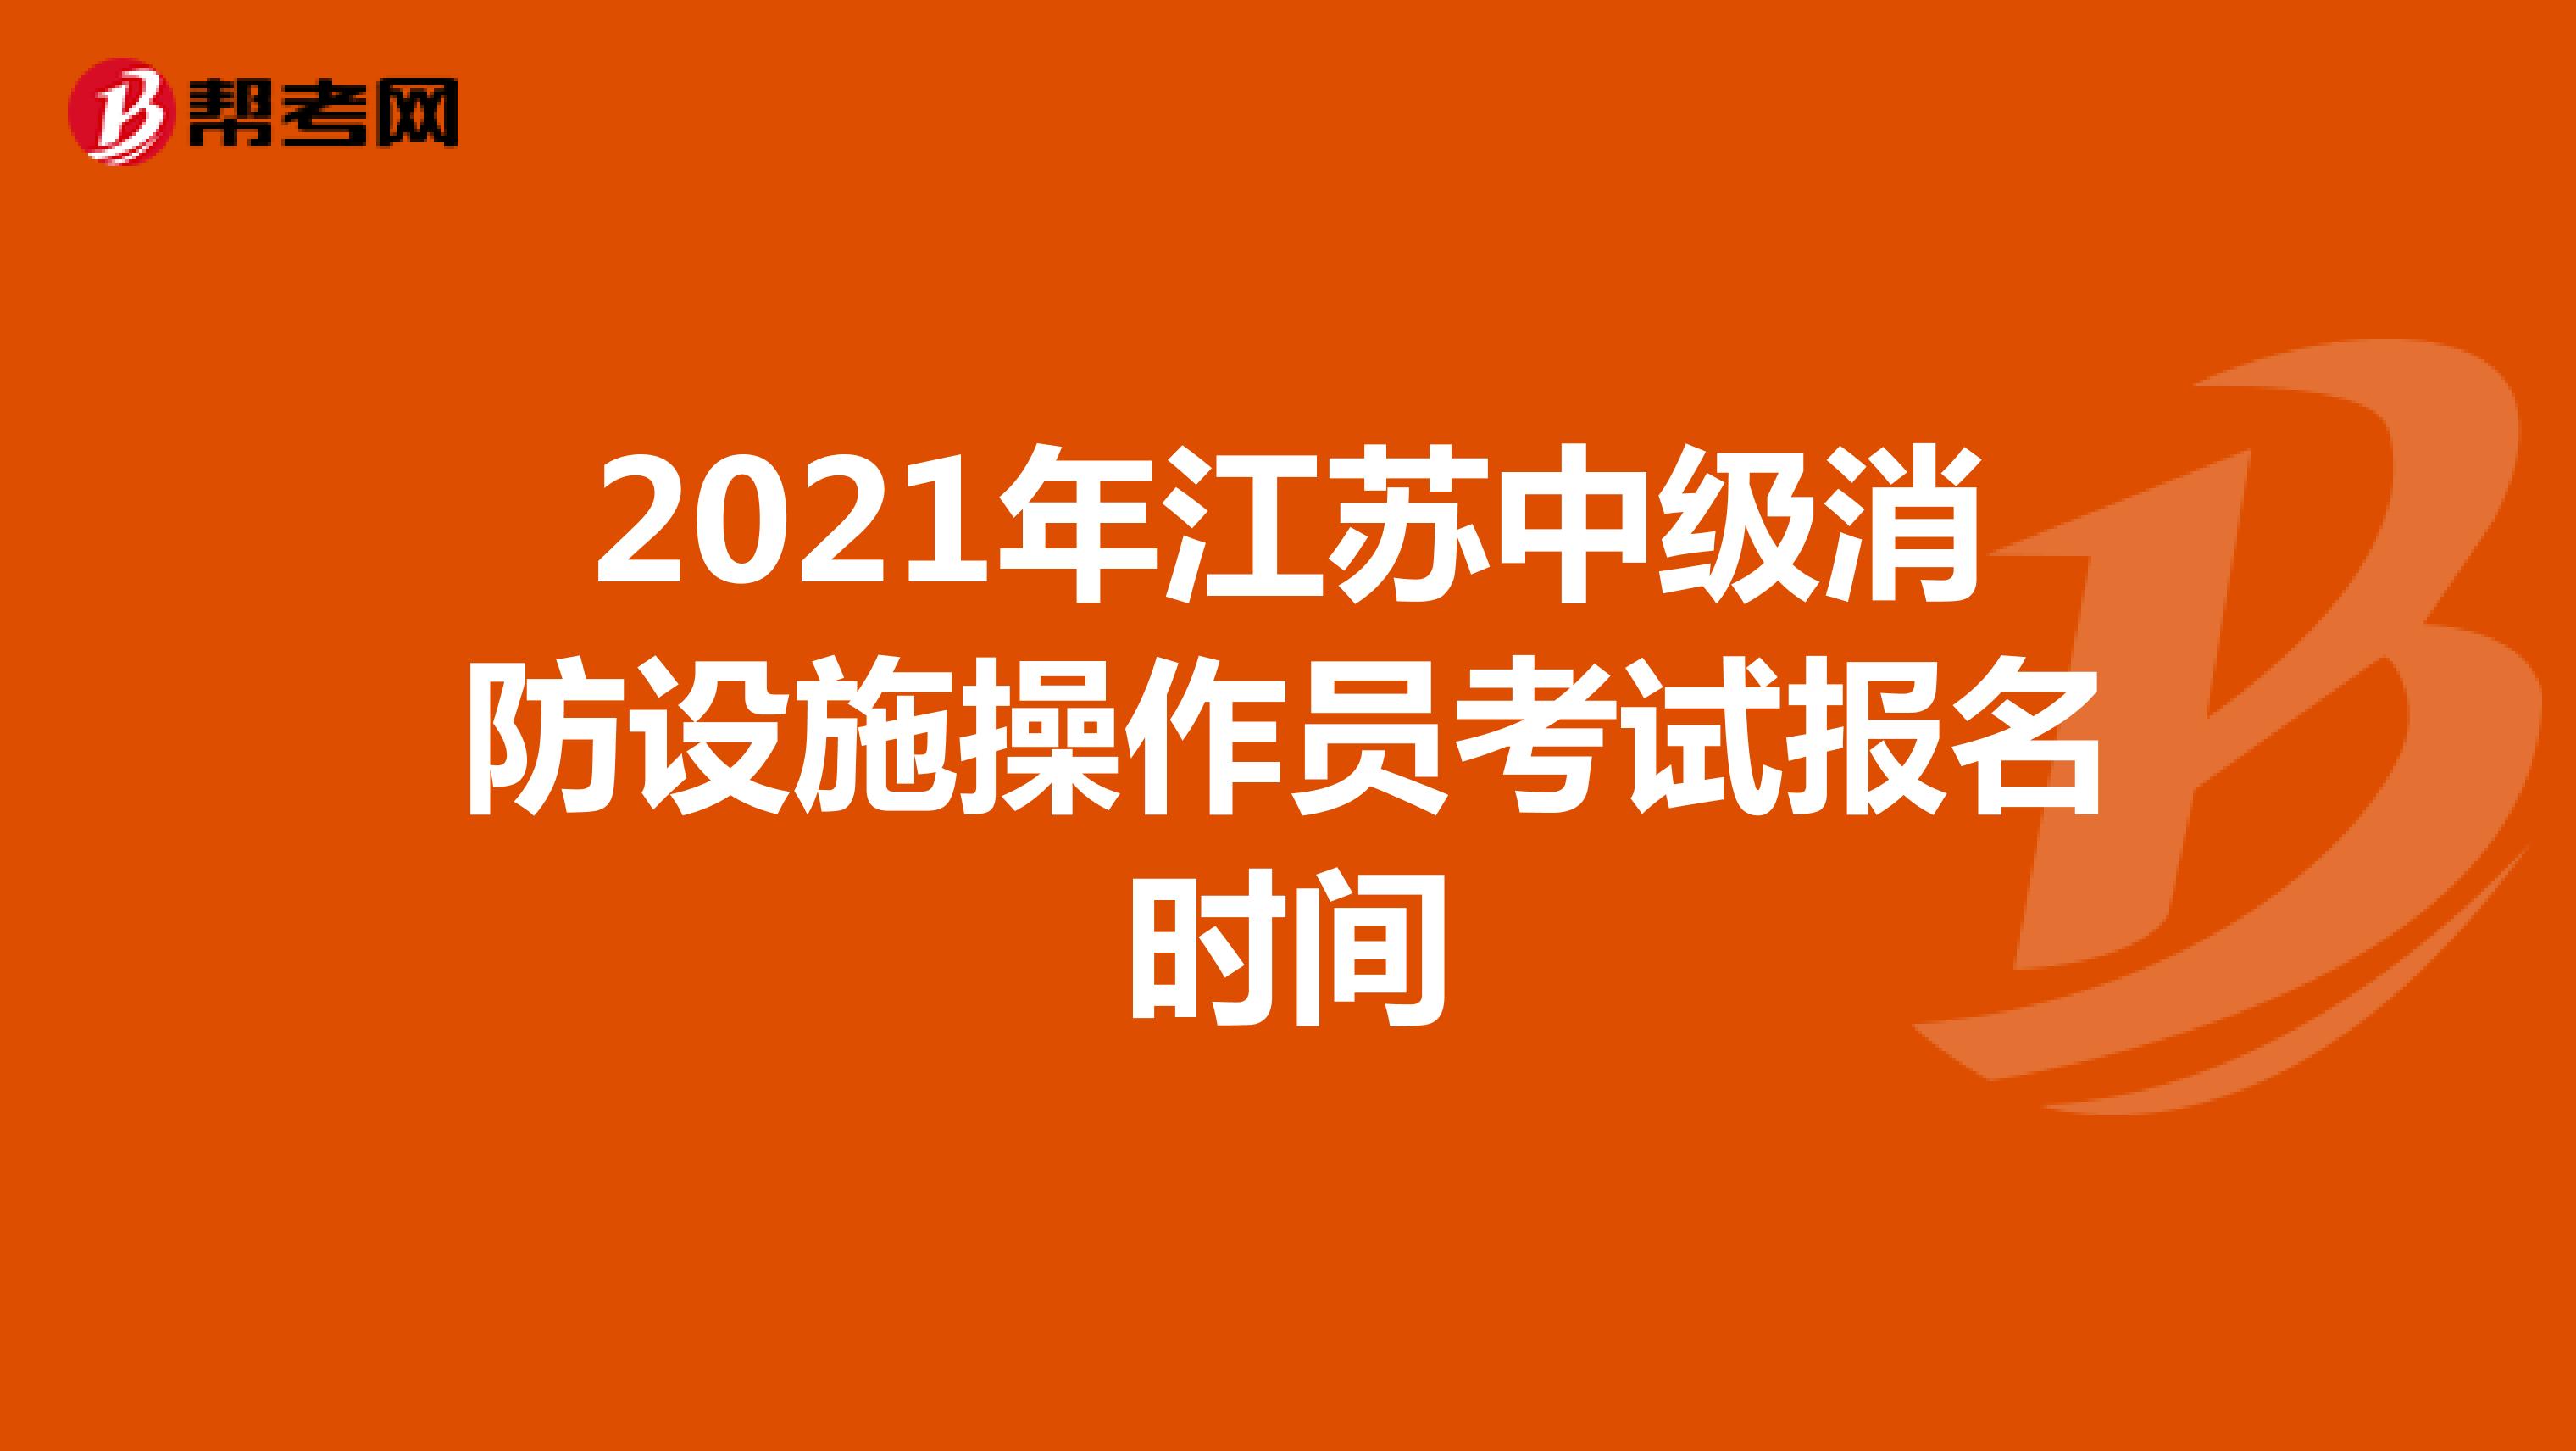 2021年江苏中级消防设施操作员考试报名时间